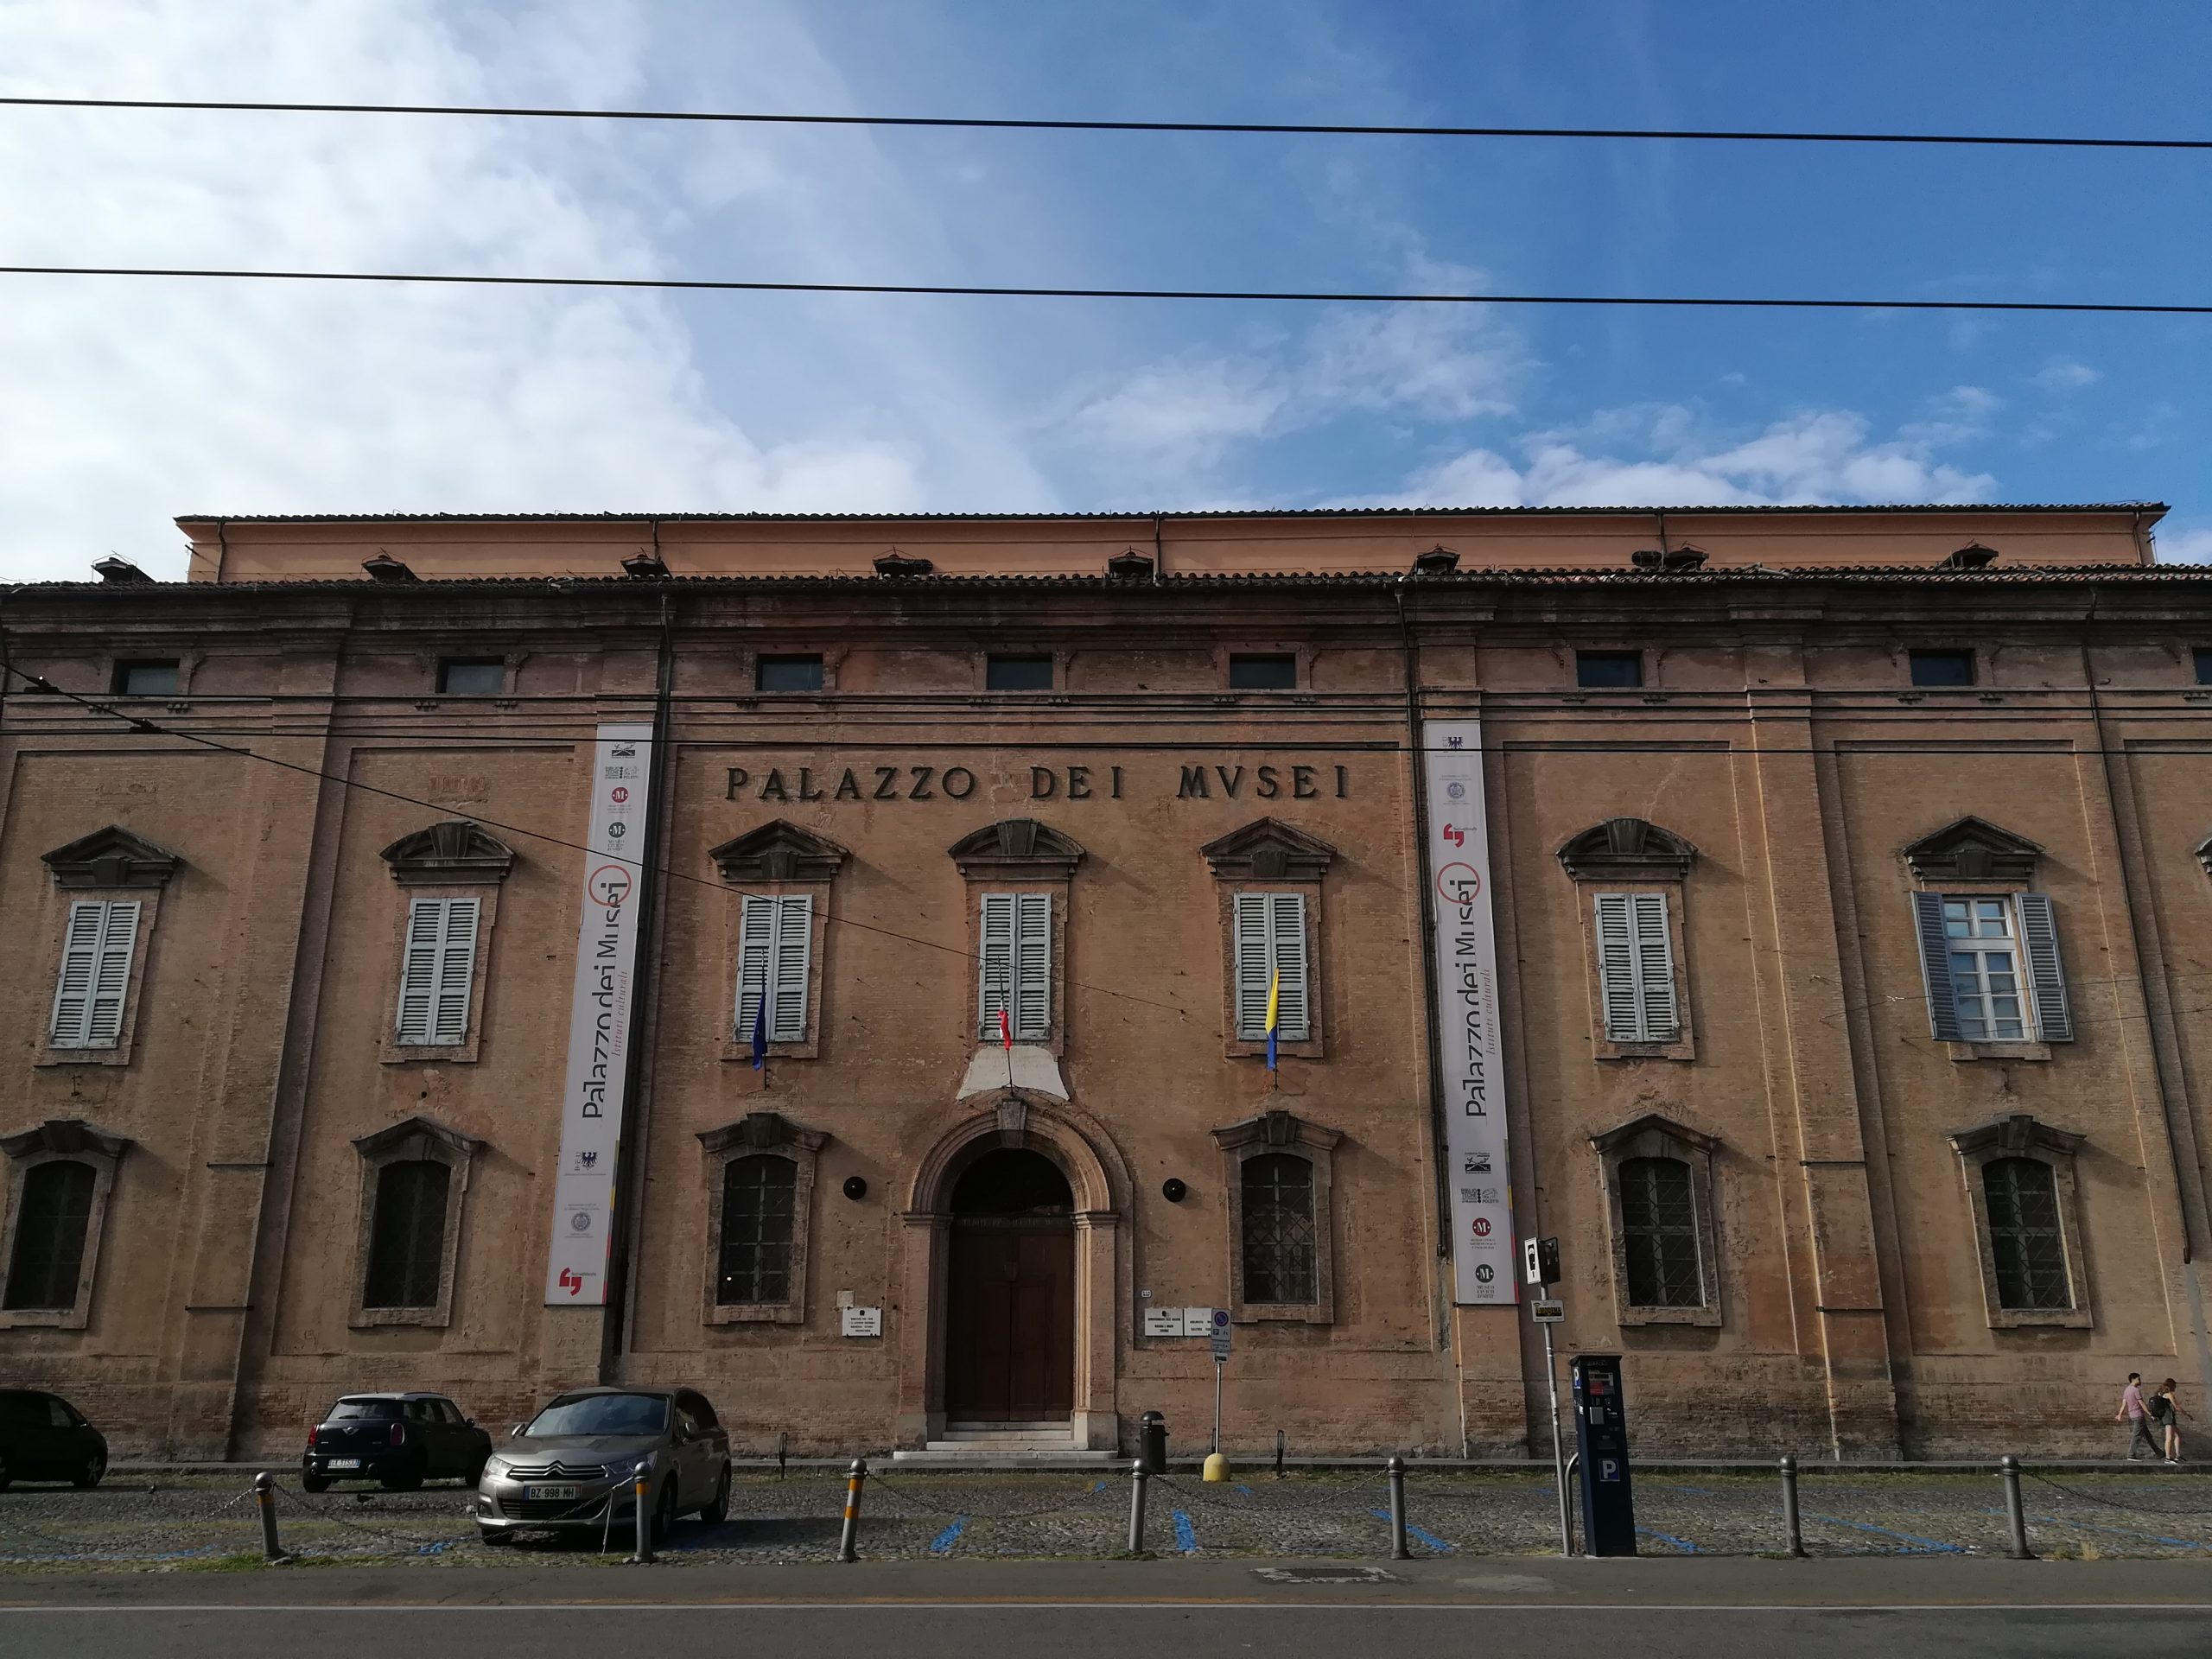 Galleria Estense